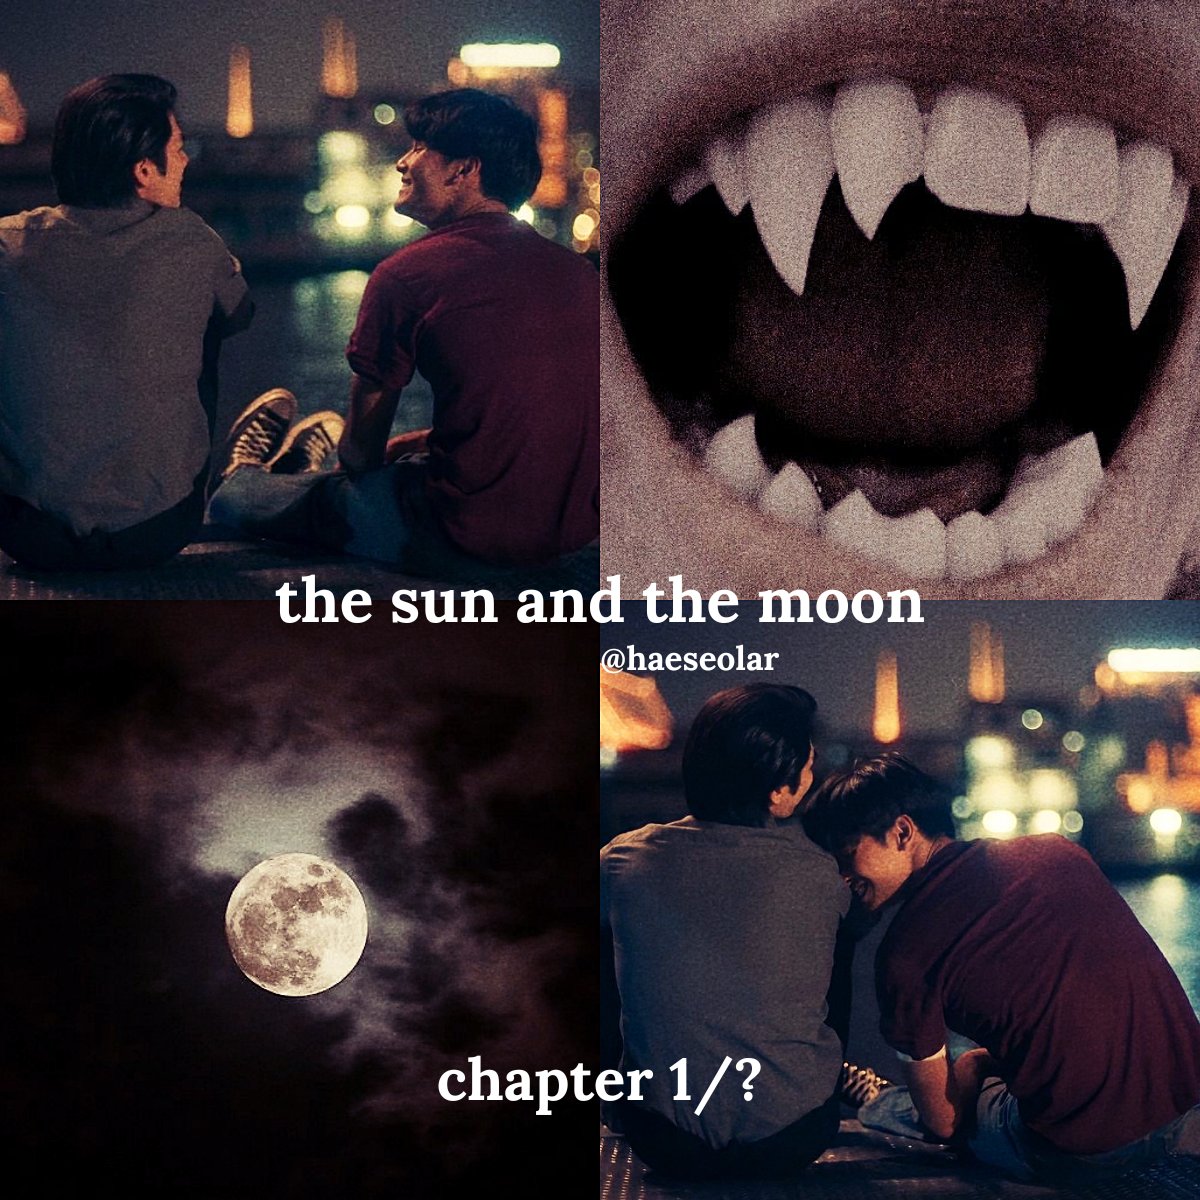 the sun and the moon 🦇 kinnporsche 🐺 canon au - werewolf!kinn, vampire!porsche 🦇 chapter 1/?, rated M, 3.3k words 🐺🔗 below